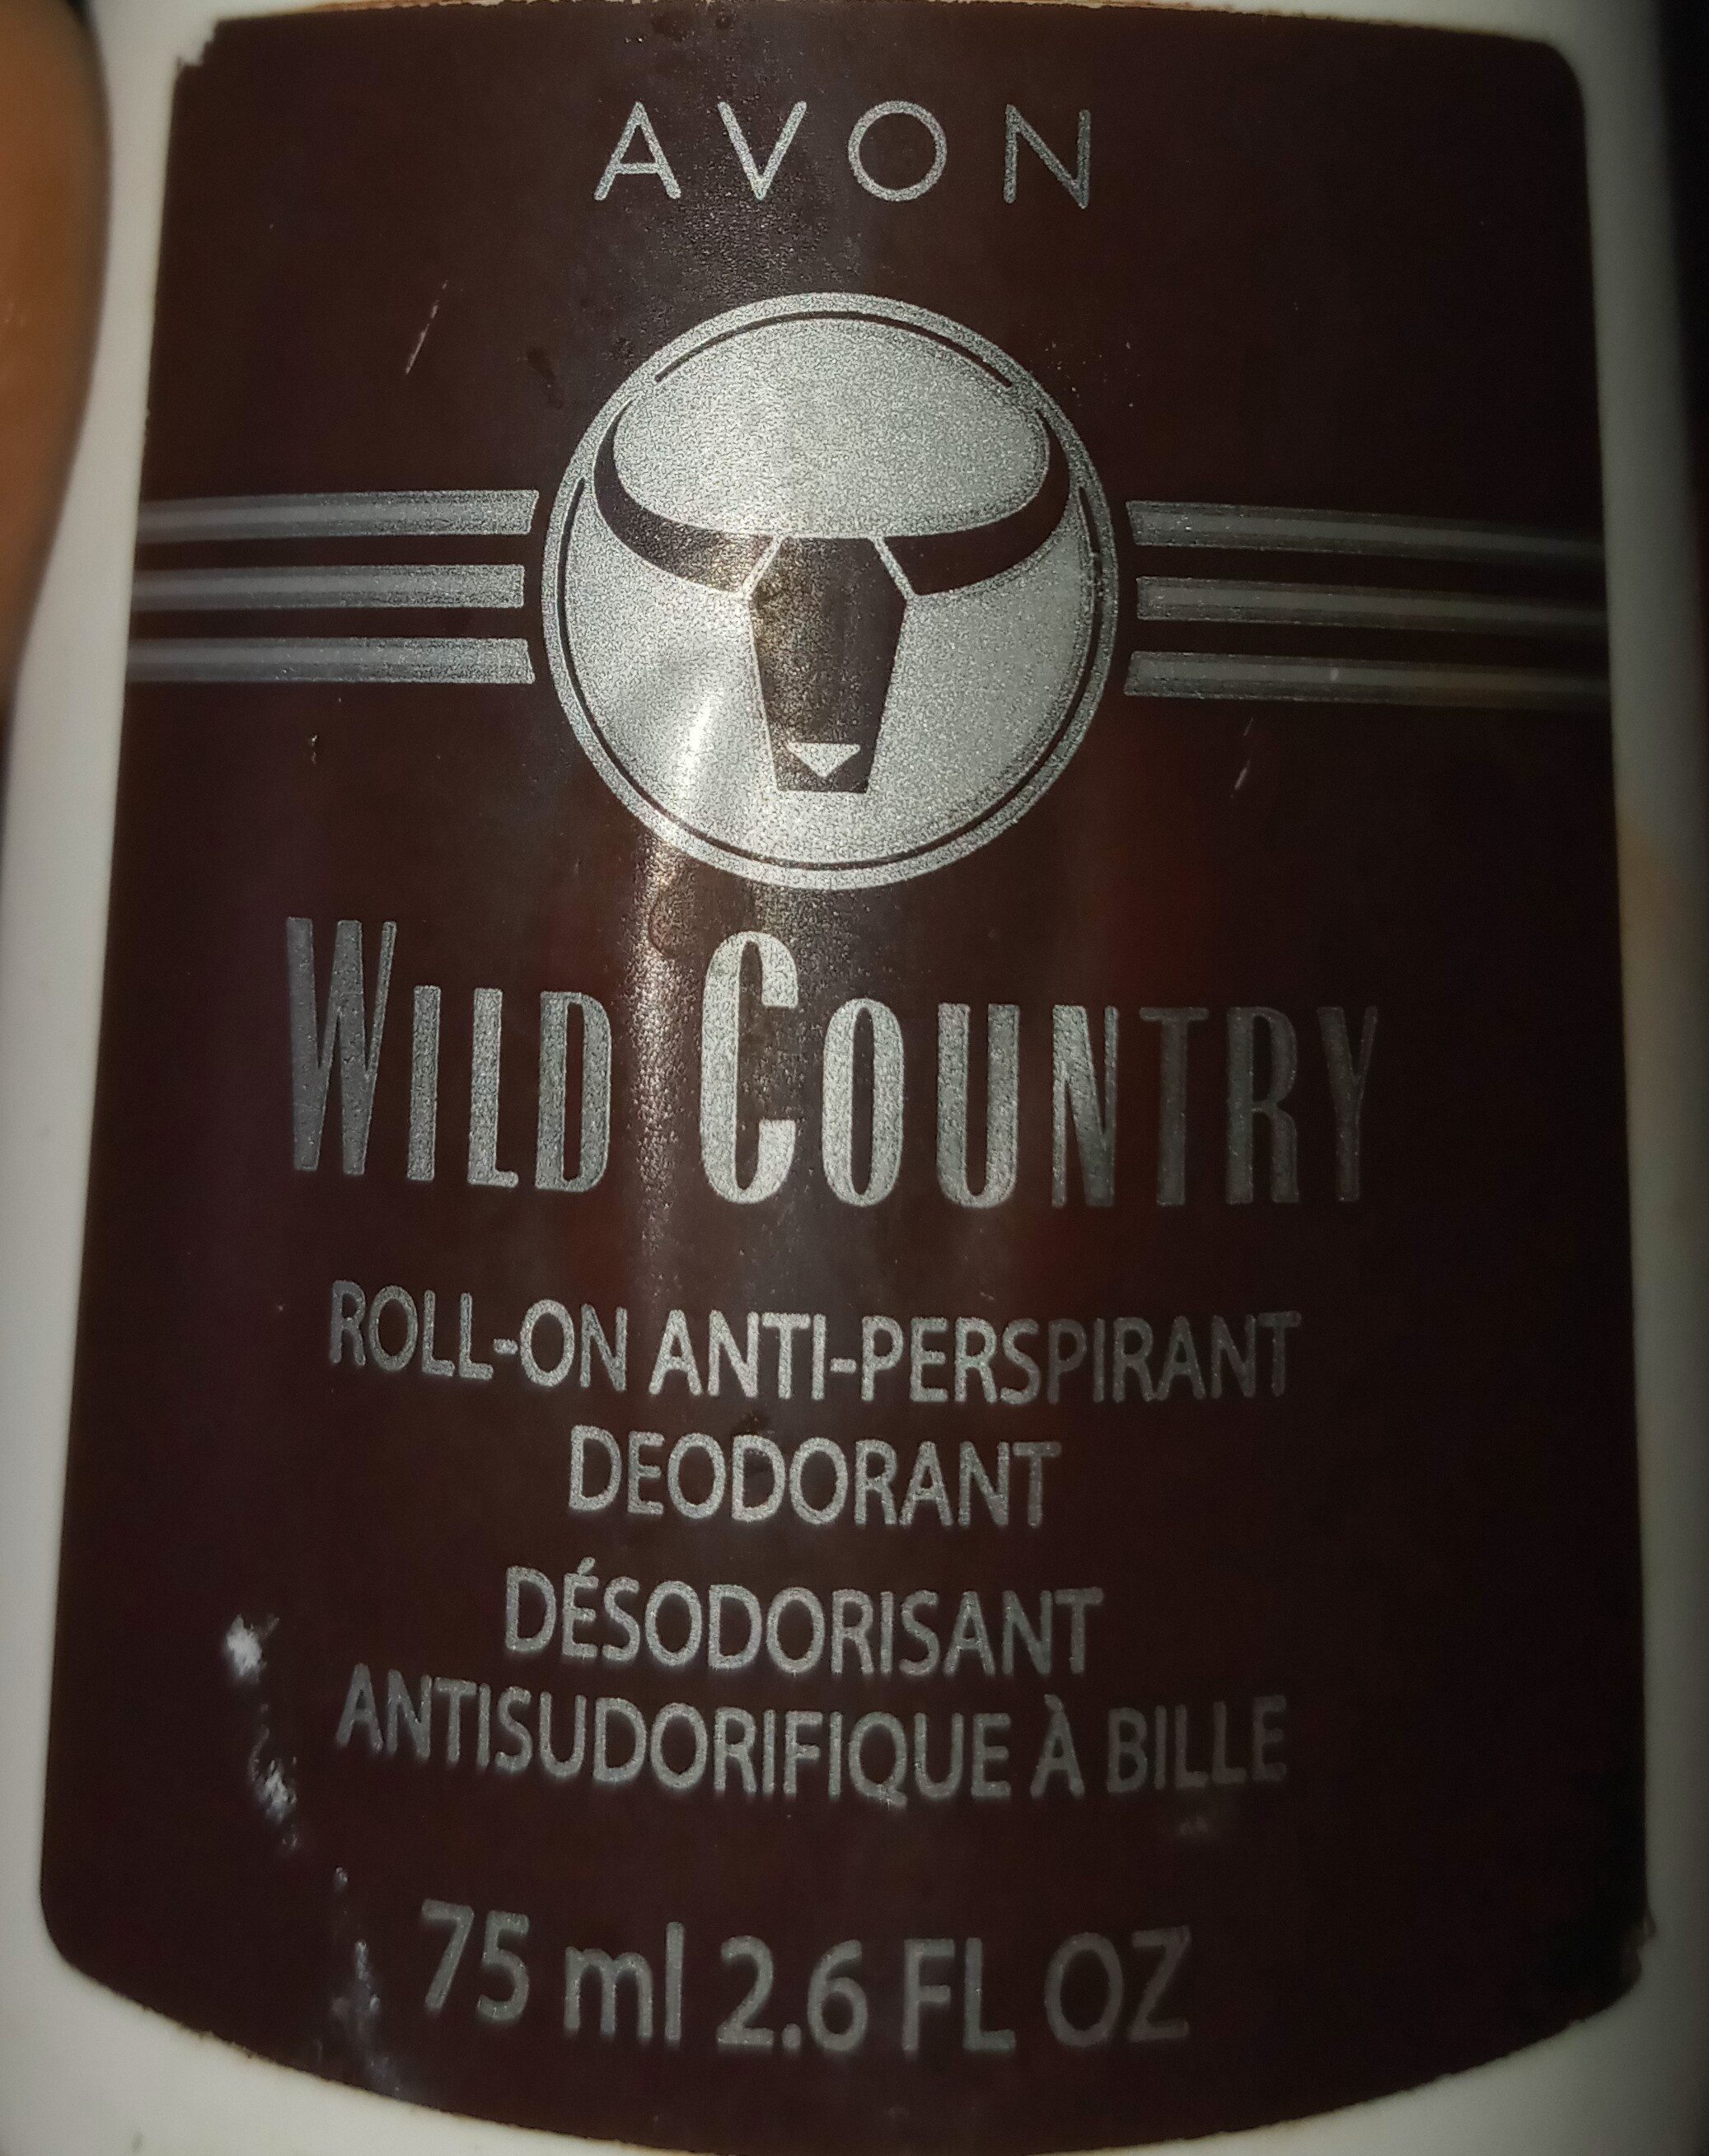 Wild country, roll-on deodorant - Ingrédients - en